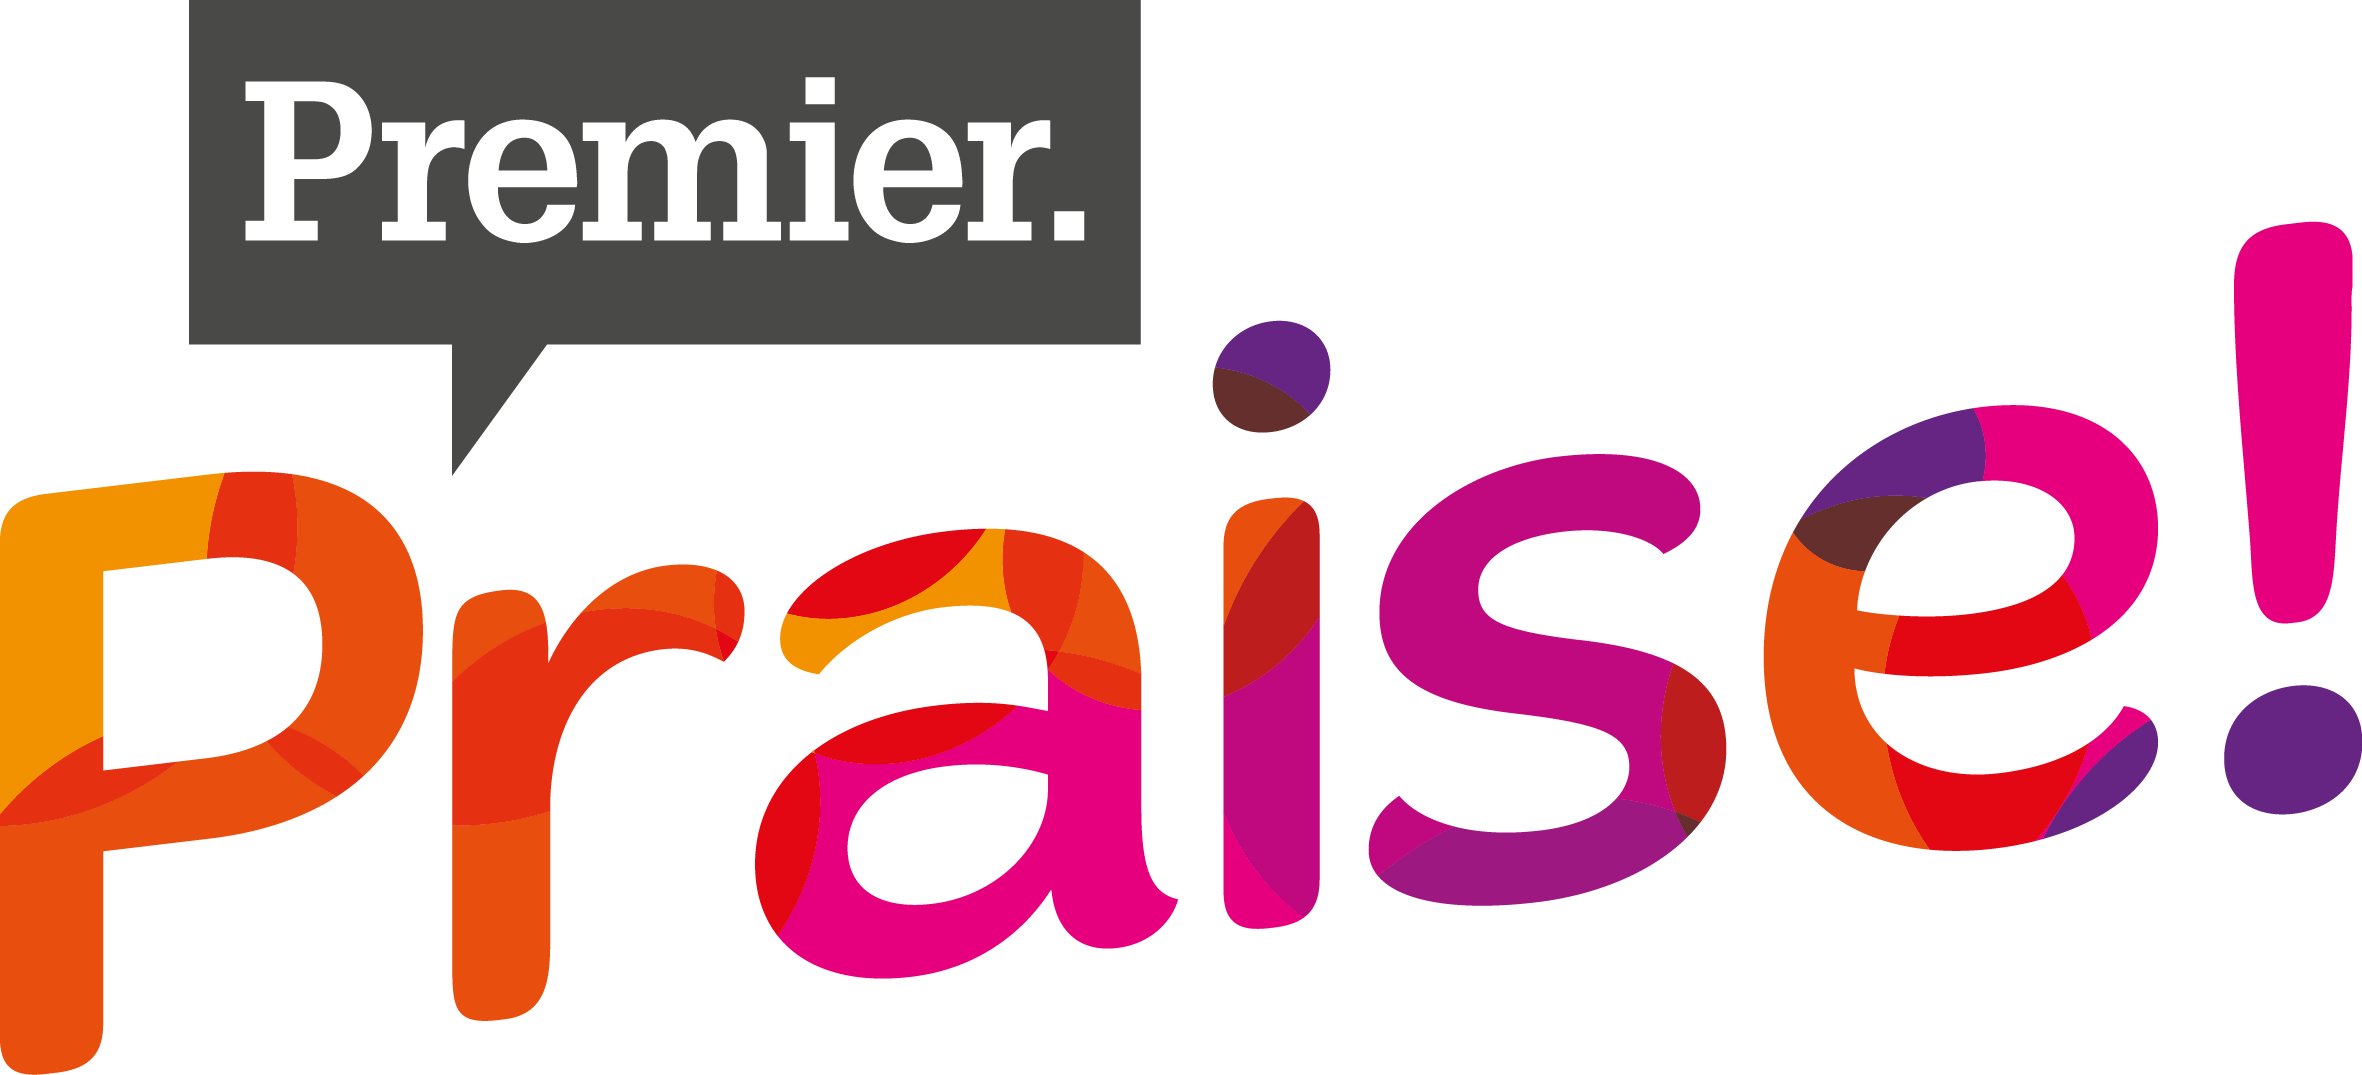 Premier Praise logo